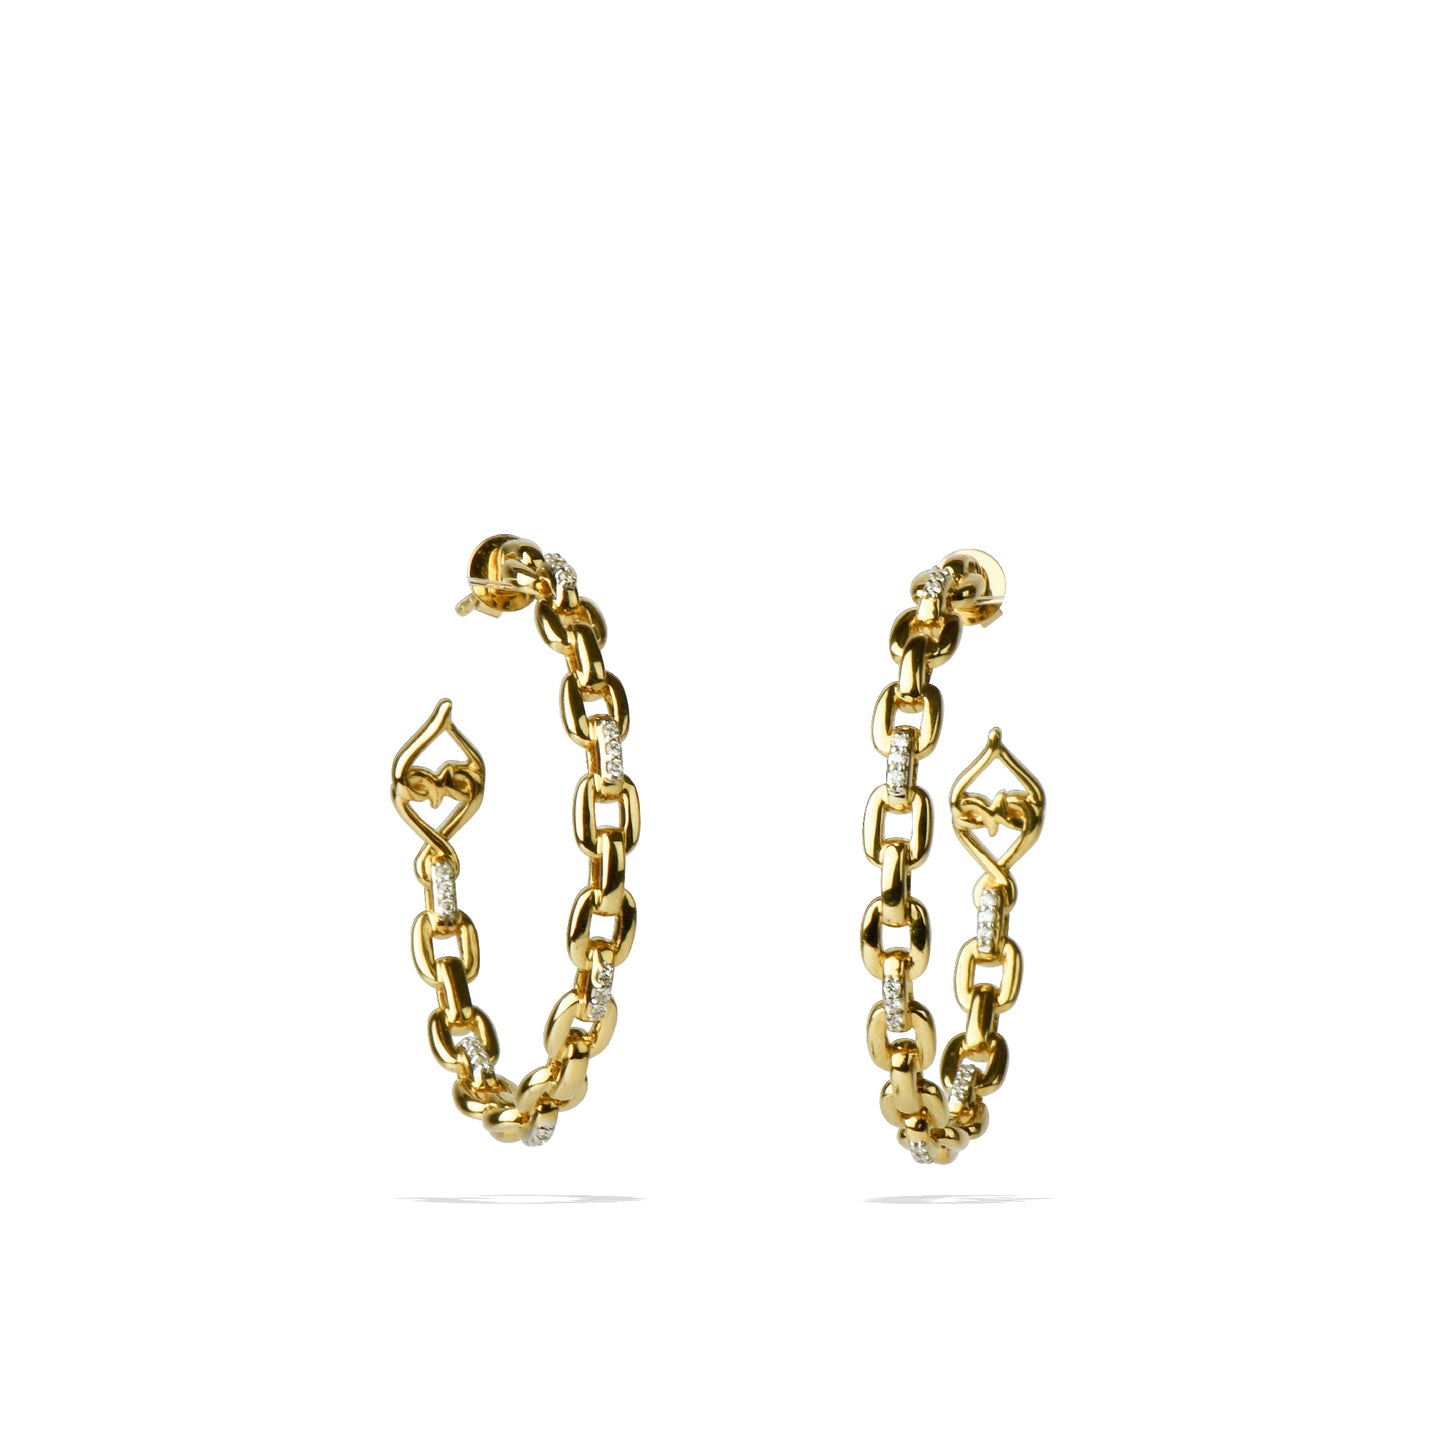 Gold Diamond Hoop Earrings | 2" Diamond Hoops